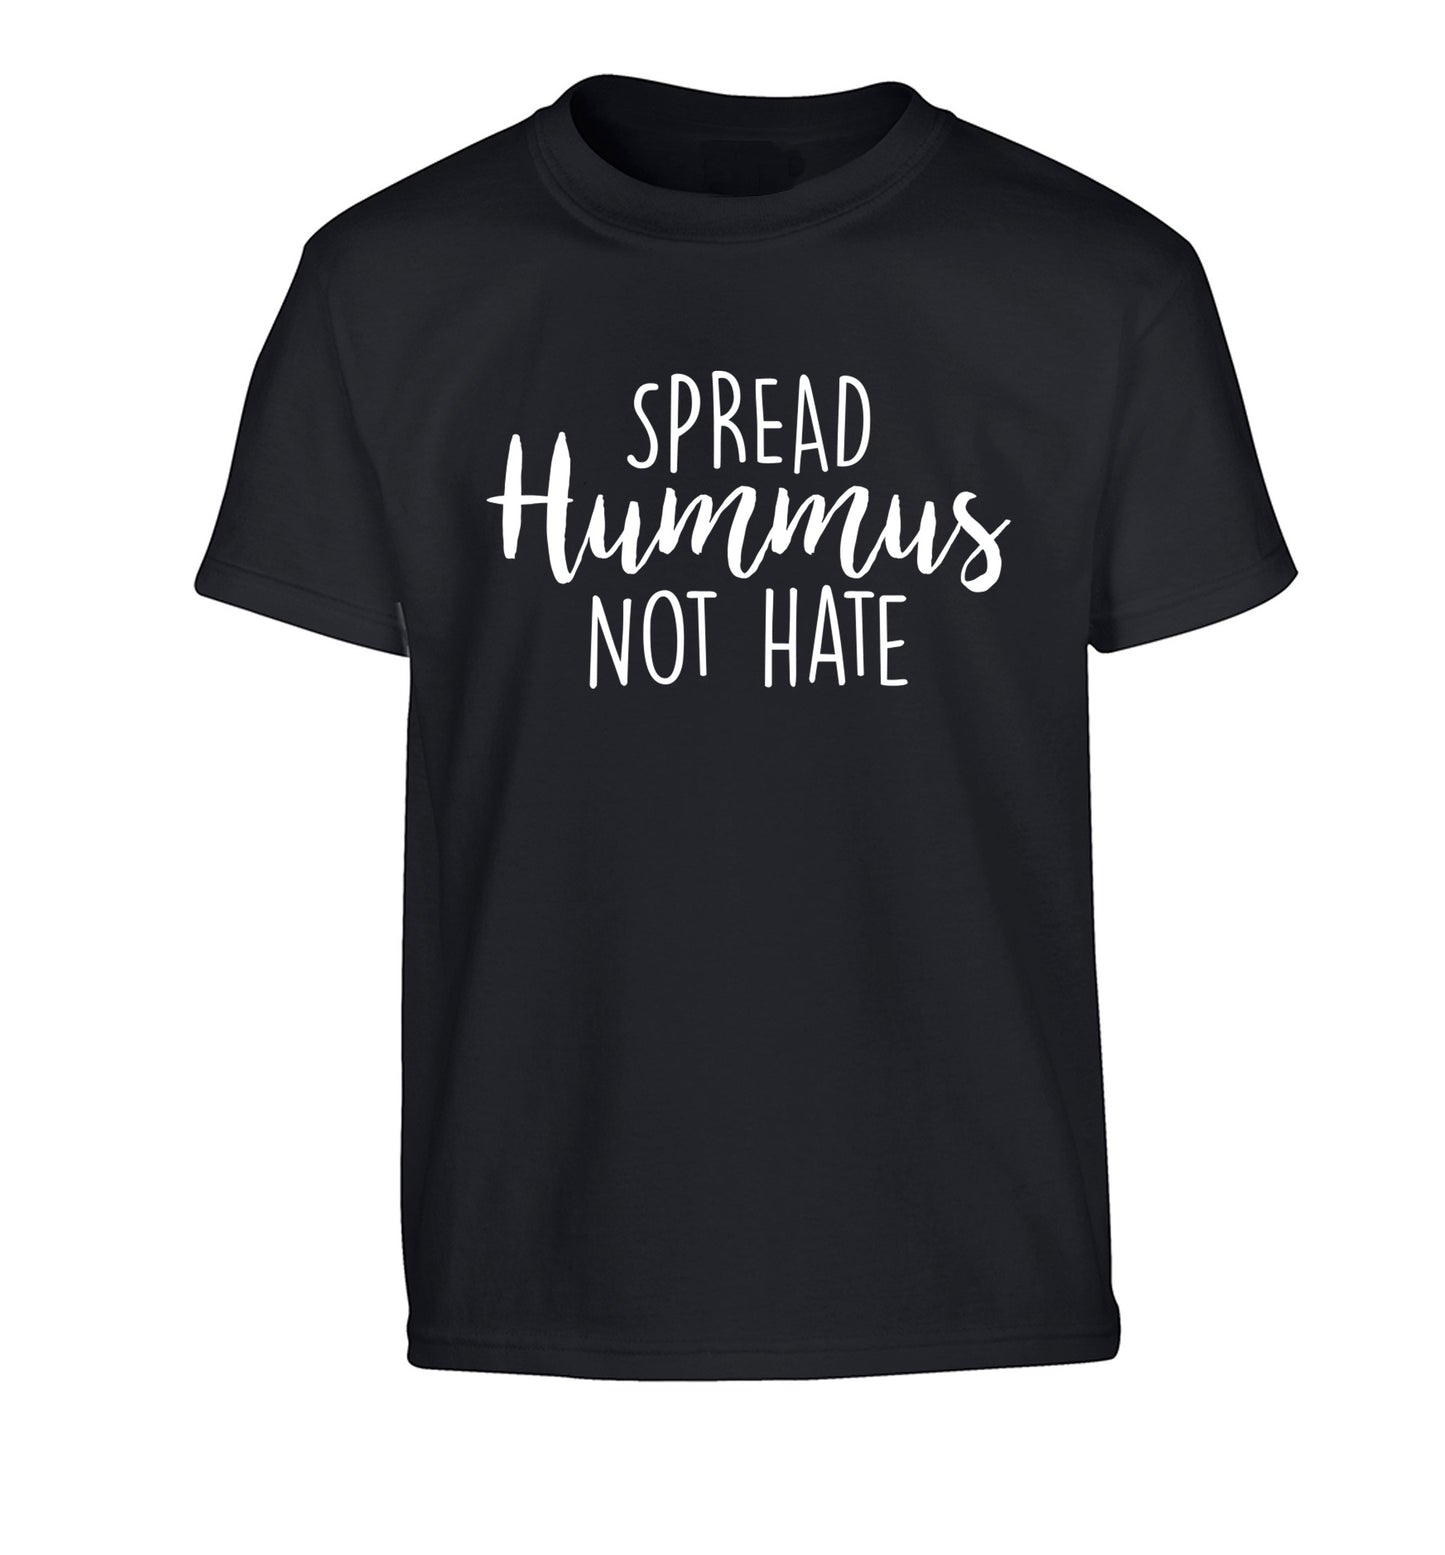 Spread hummus not hate script text Children's black Tshirt 12-14 Years